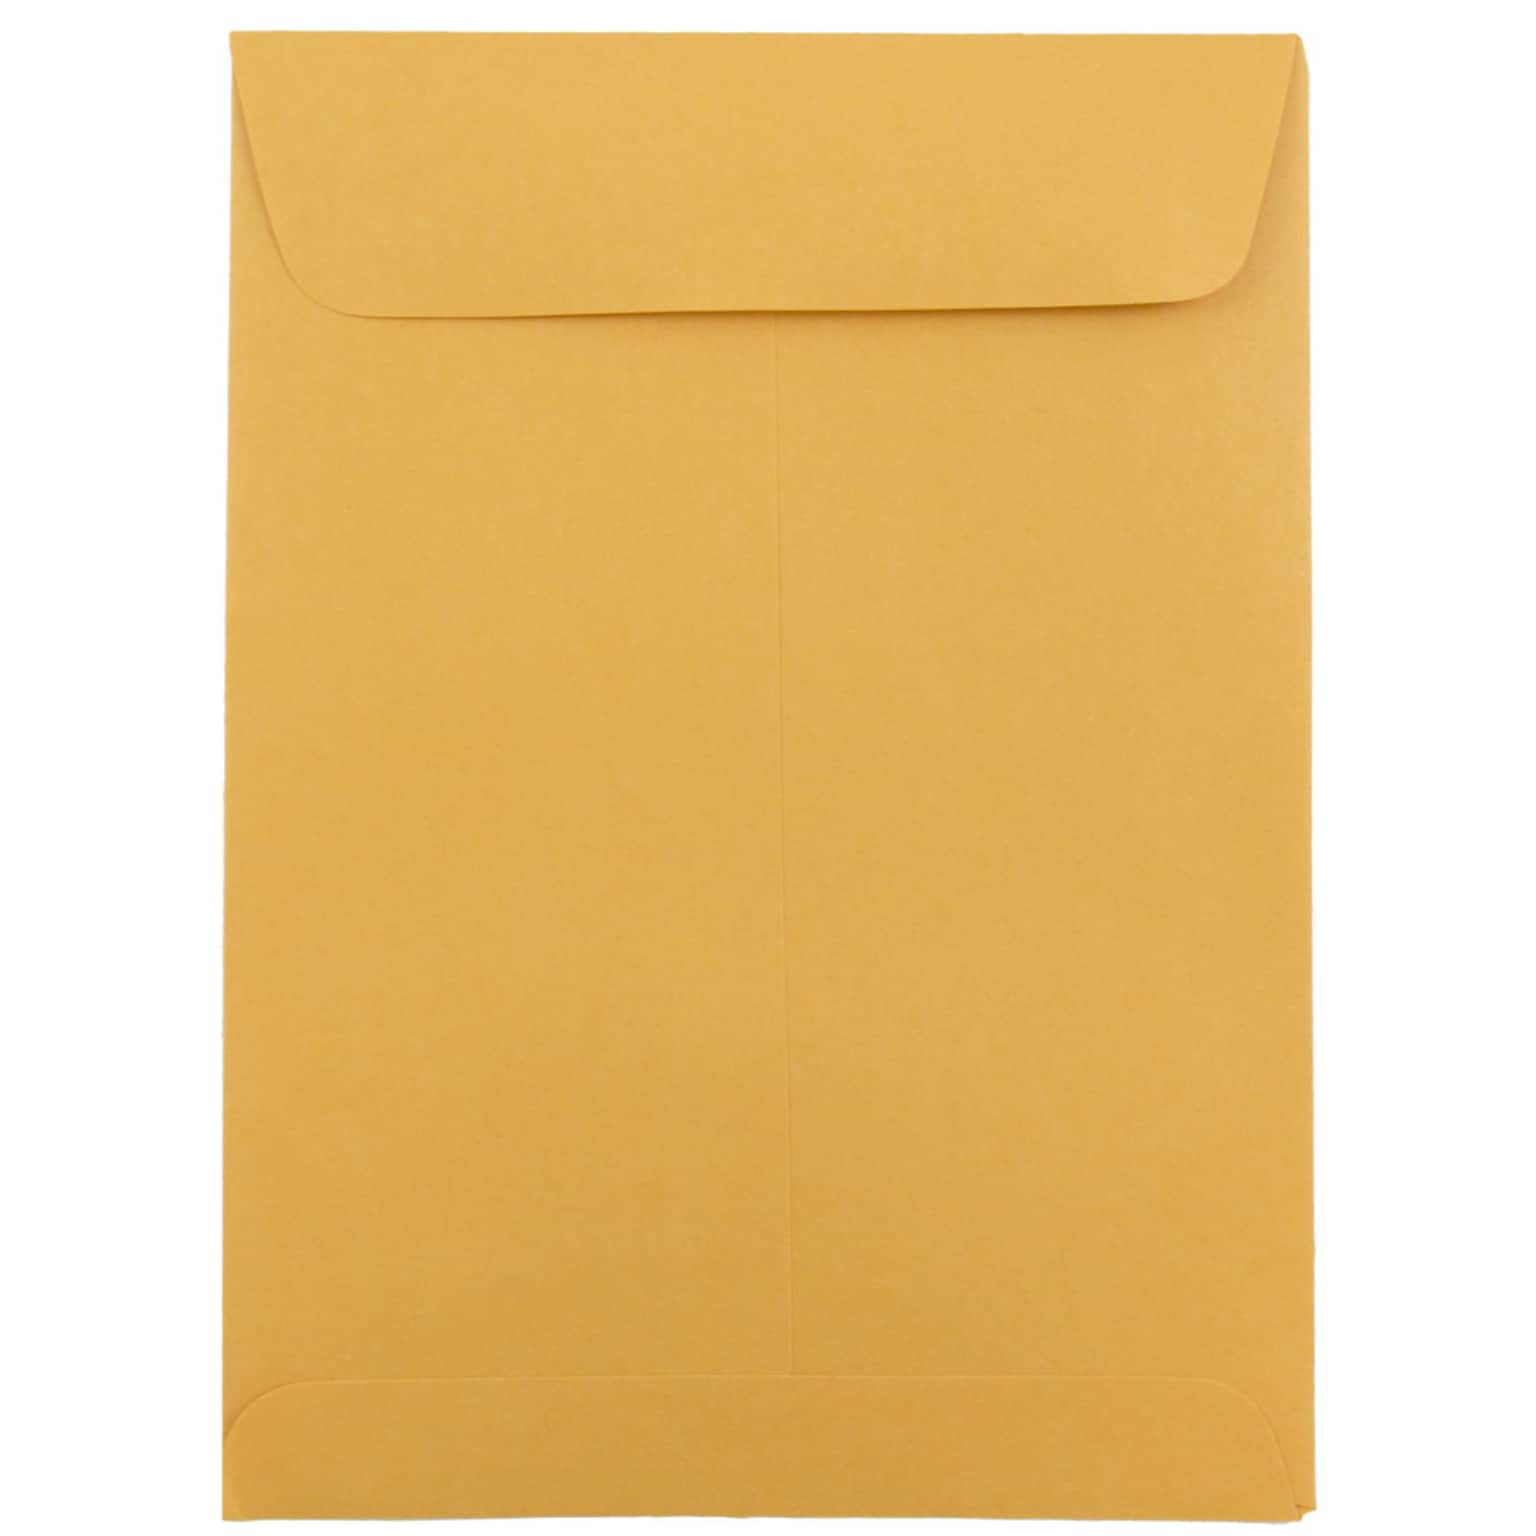 JAM Paper® 5.5 x 7.5 Open End Catalog Envelopes, Brown Kraft Manila, 50/Pack (4101i)